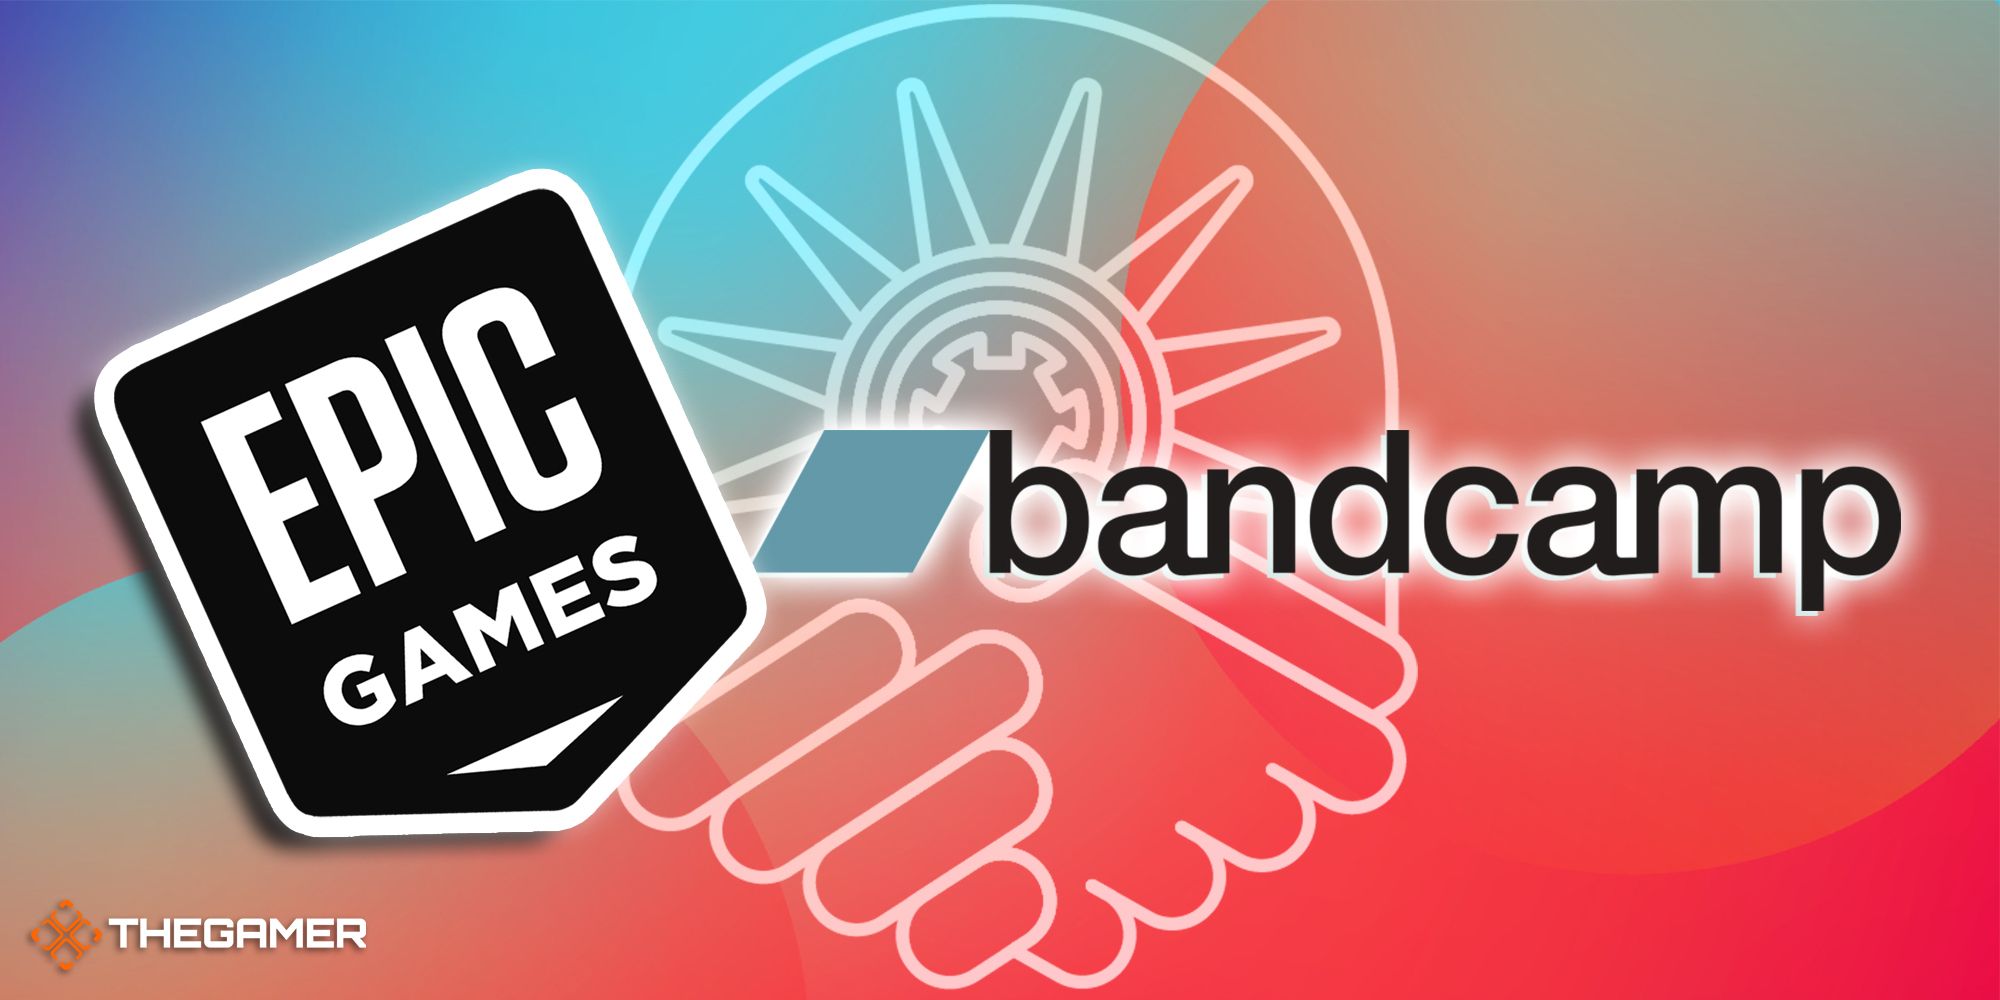 10-Epic Games Bandcamp Has Unionized